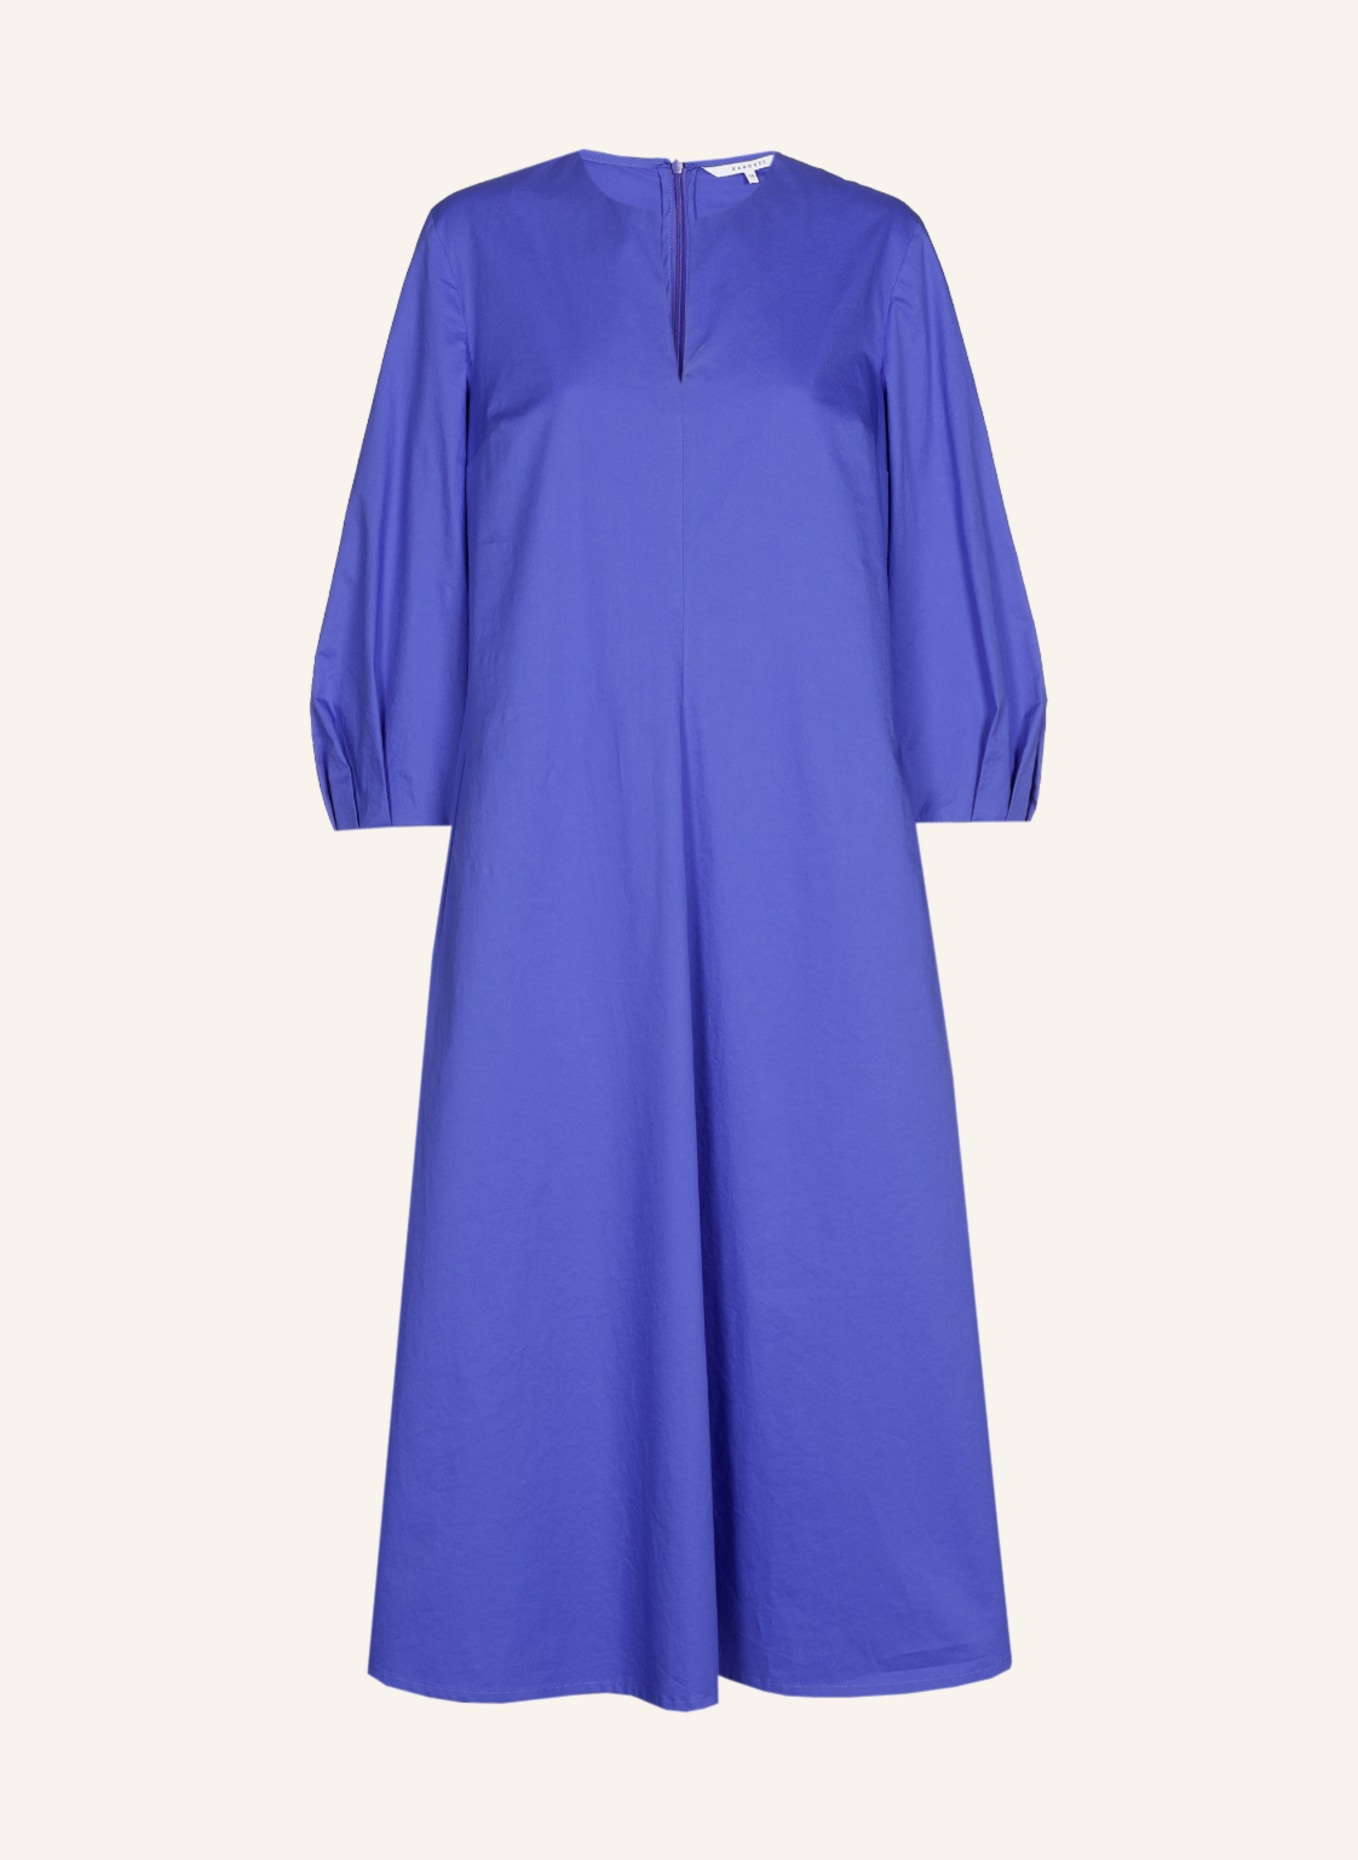 XANDRES Kleid KICKY, Farbe: BLAU/ HELLBLAU (Bild 1)